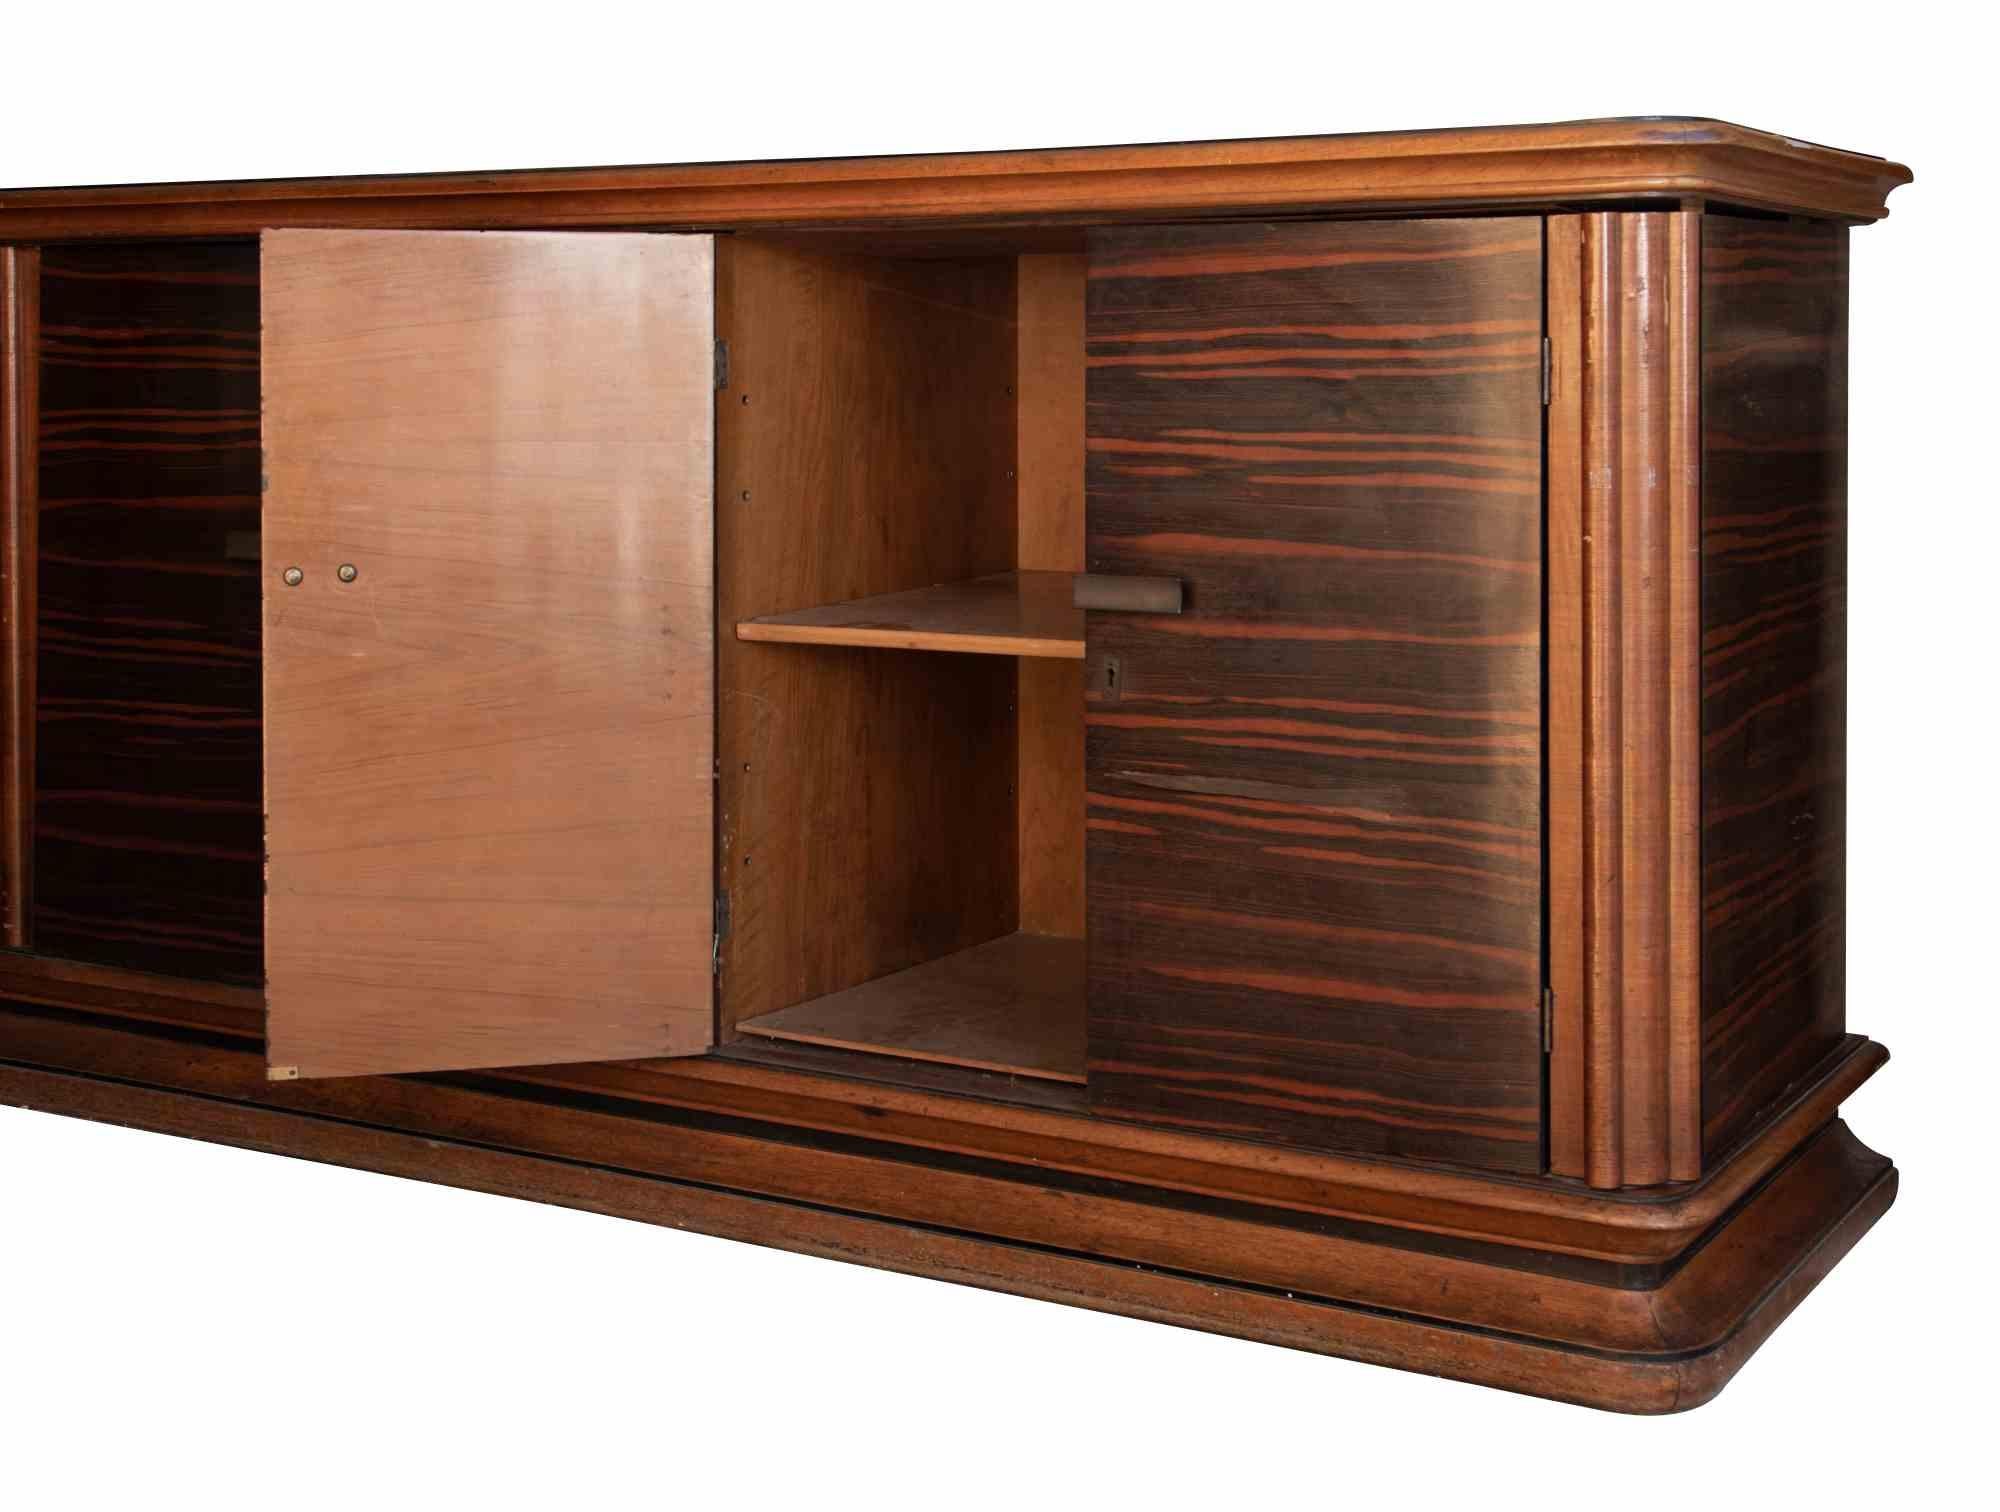 Das Vintage Sideboard ist ein zeitgenössisches Designermöbel, das in den 1970er Jahren in Italien von Luciano Frigerio (1928-1999) entworfen wurde.

Ein Vintage-Sideboard ganz aus Holz. Seitentüren und Schubladen im Mittelteil

Hergestellt in